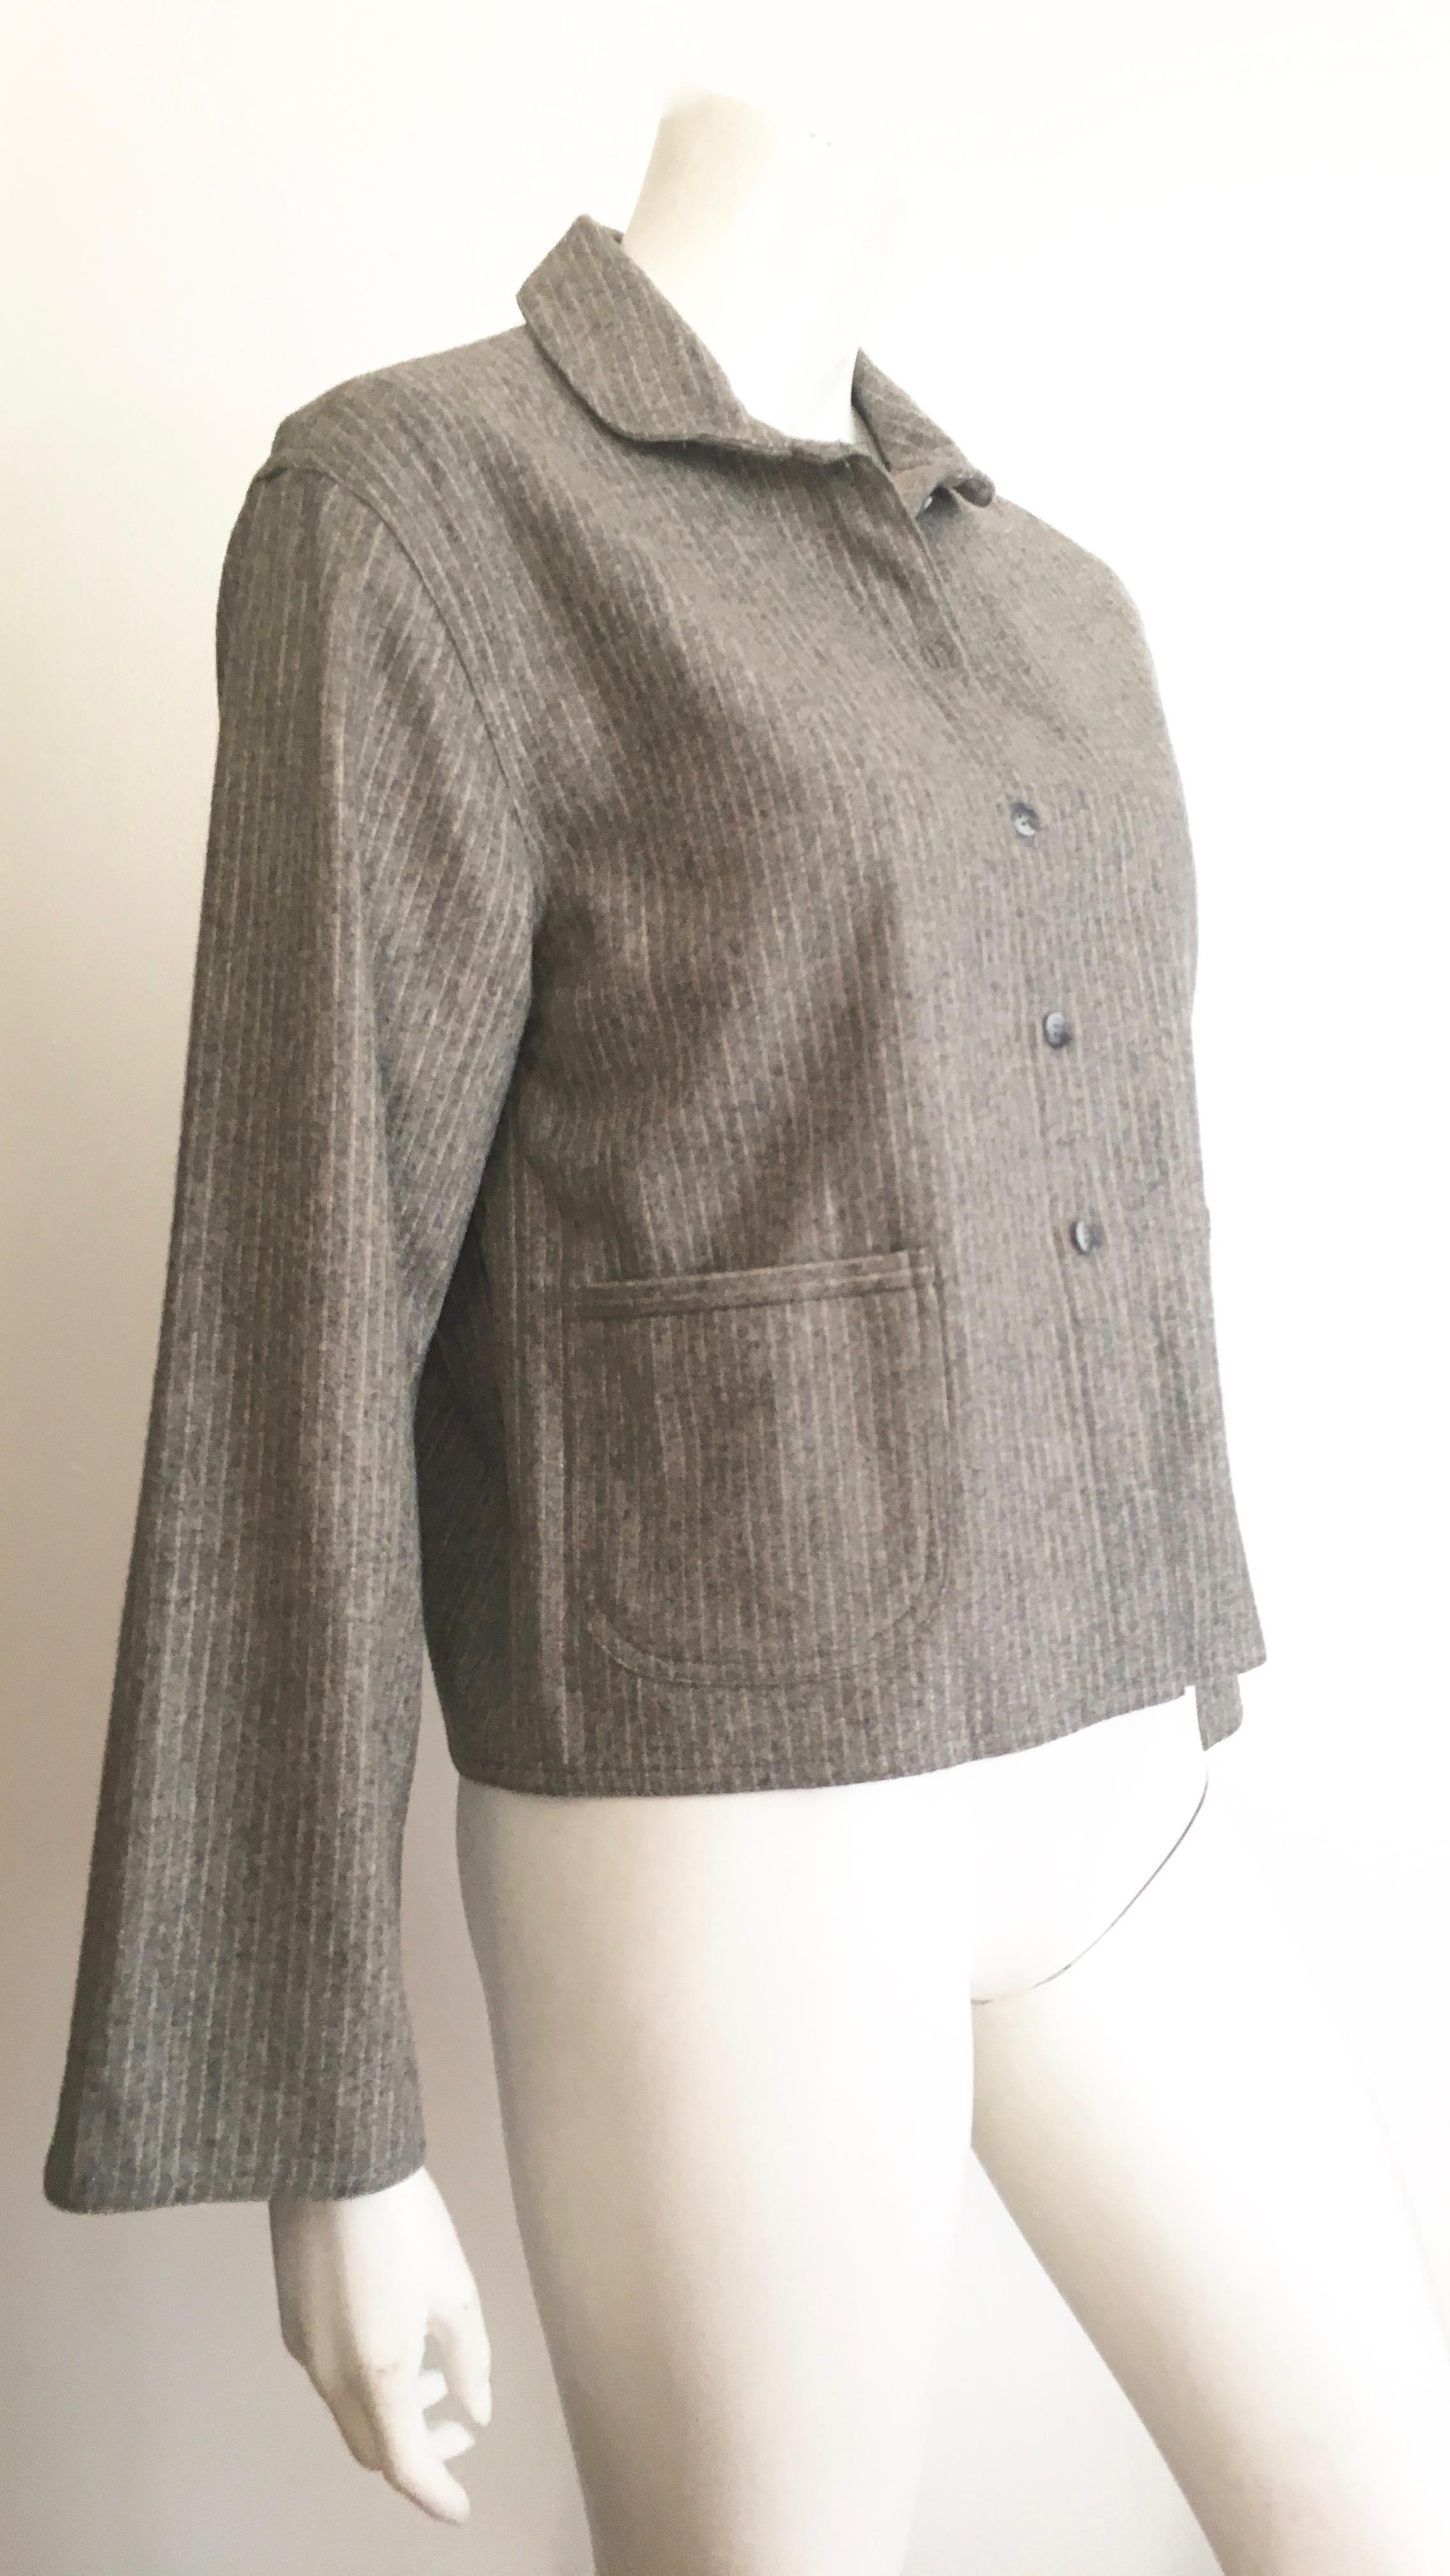 Women's or Men's Geoffrey Beene 1980s Grey Pinstripe Wool Jacket Size 6 / 8.